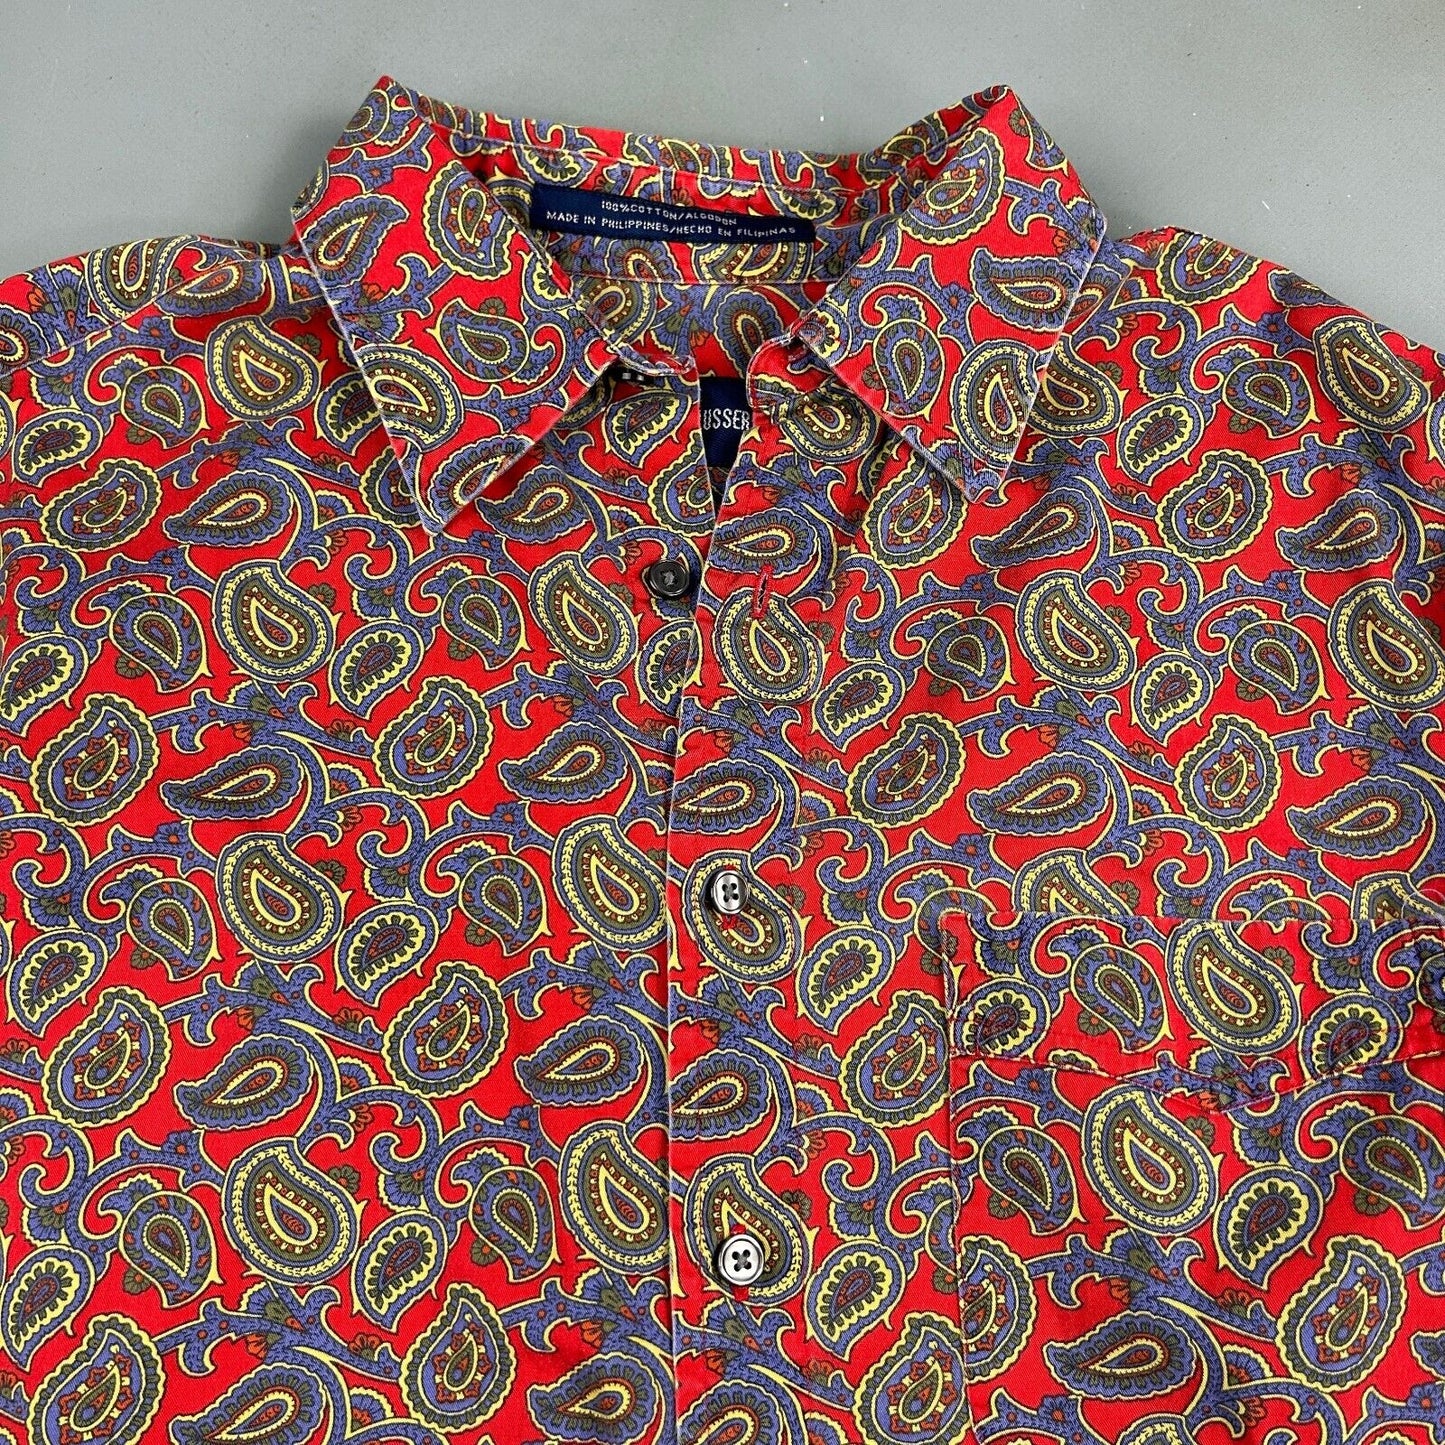 VINTAGE 90s Alan Flusser Cotton Paisley Pattern Button Up Shirt sz Medium Adult